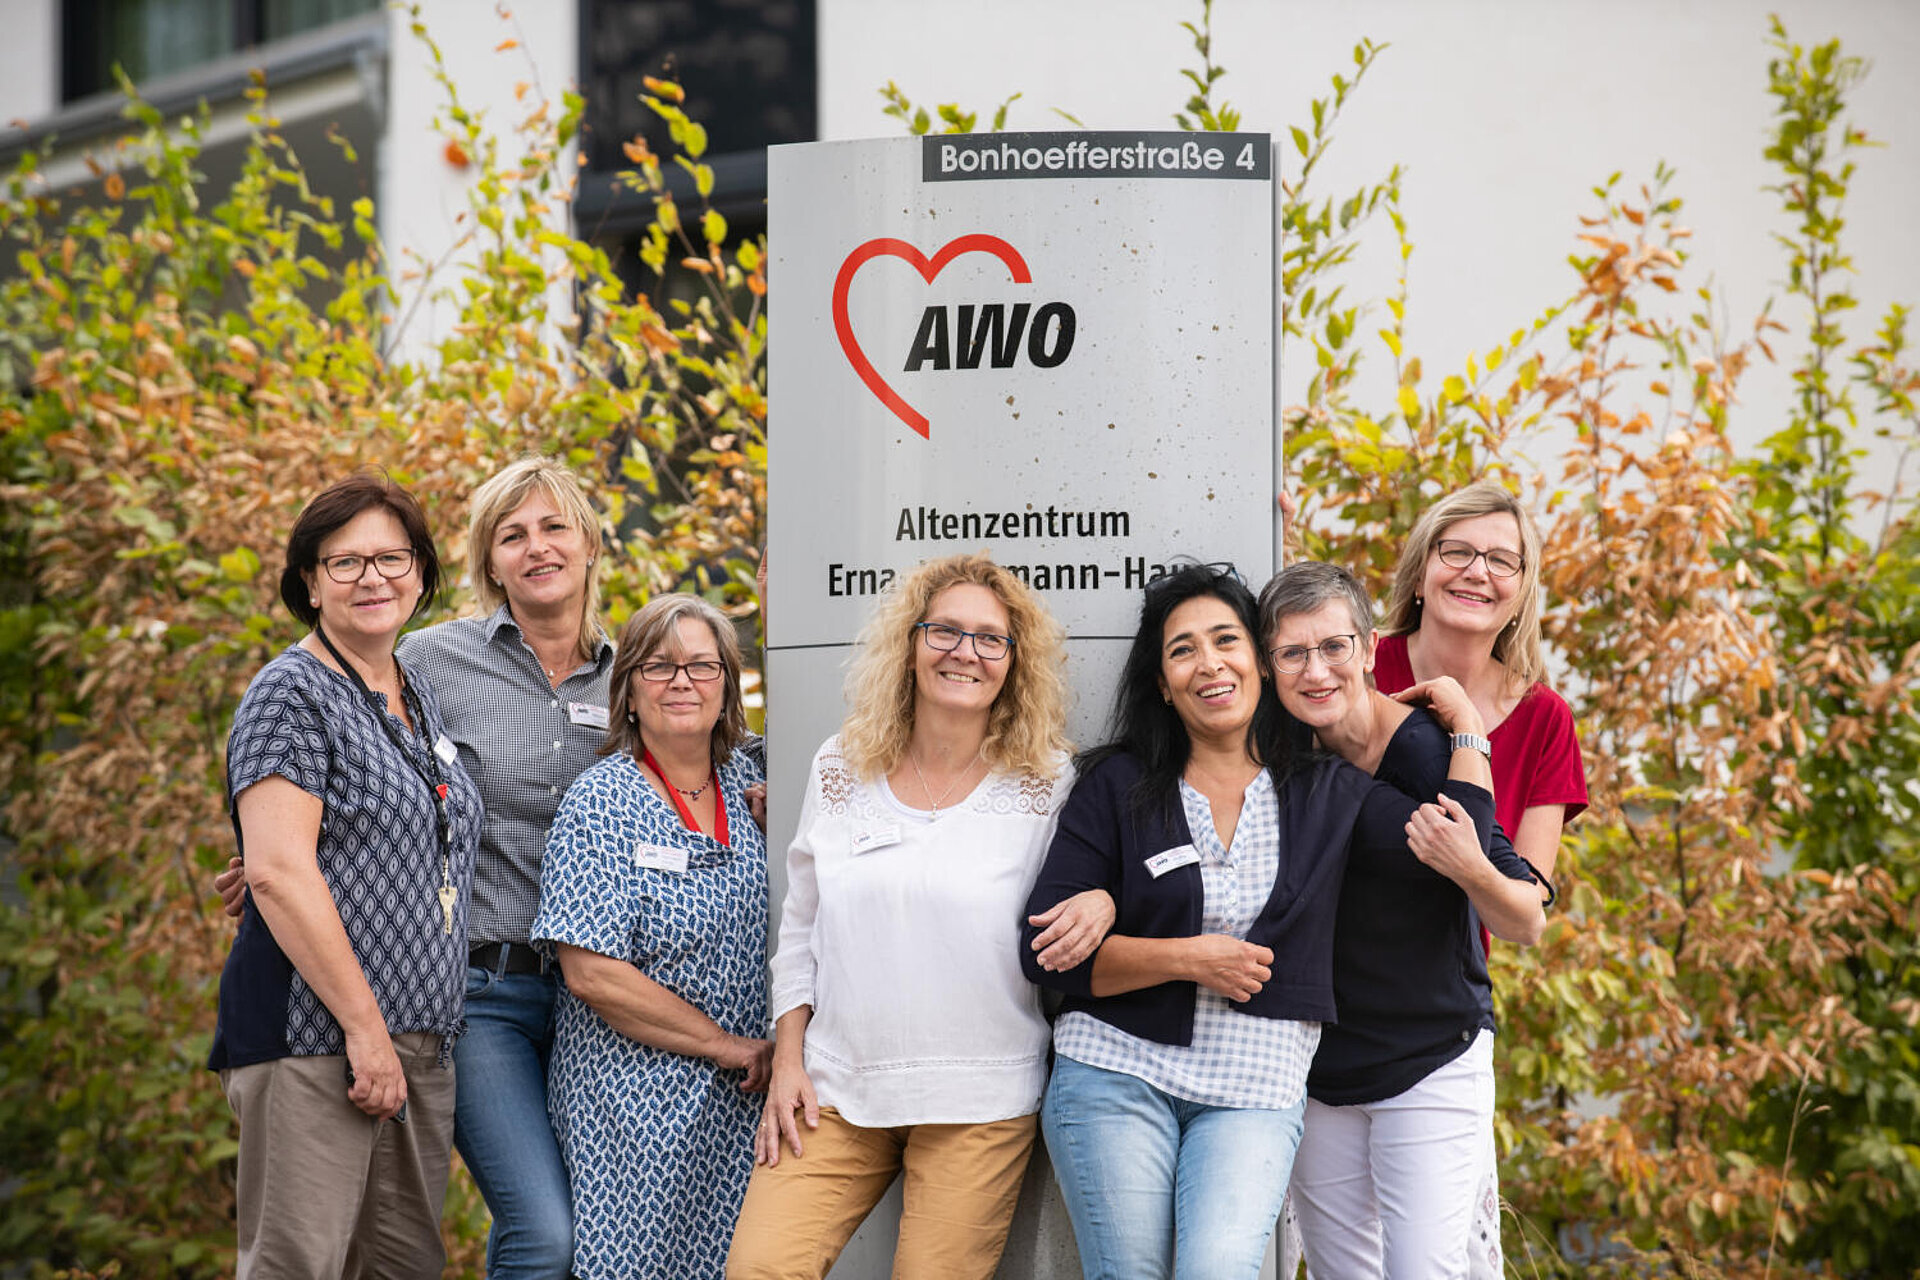 Das lächelnde Team - 6 Frauen - präsentiert sich vor einem großen AWO-Logo. Es sieht wie eine Einladung aus.